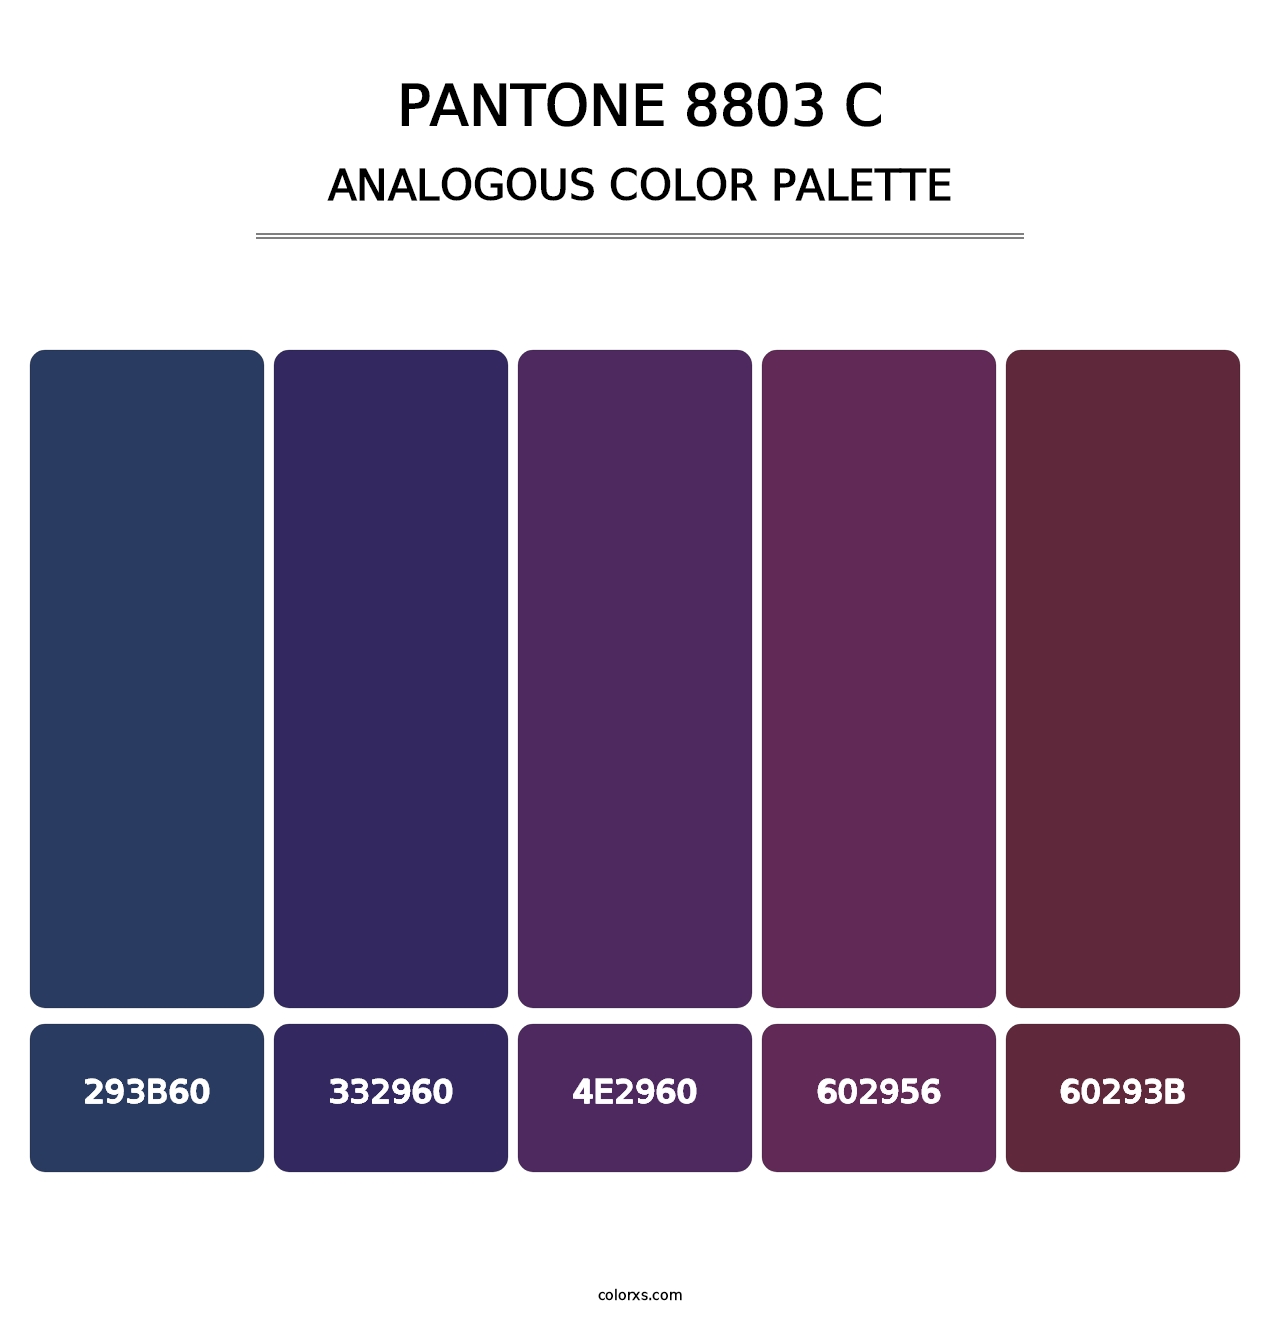 PANTONE 8803 C - Analogous Color Palette